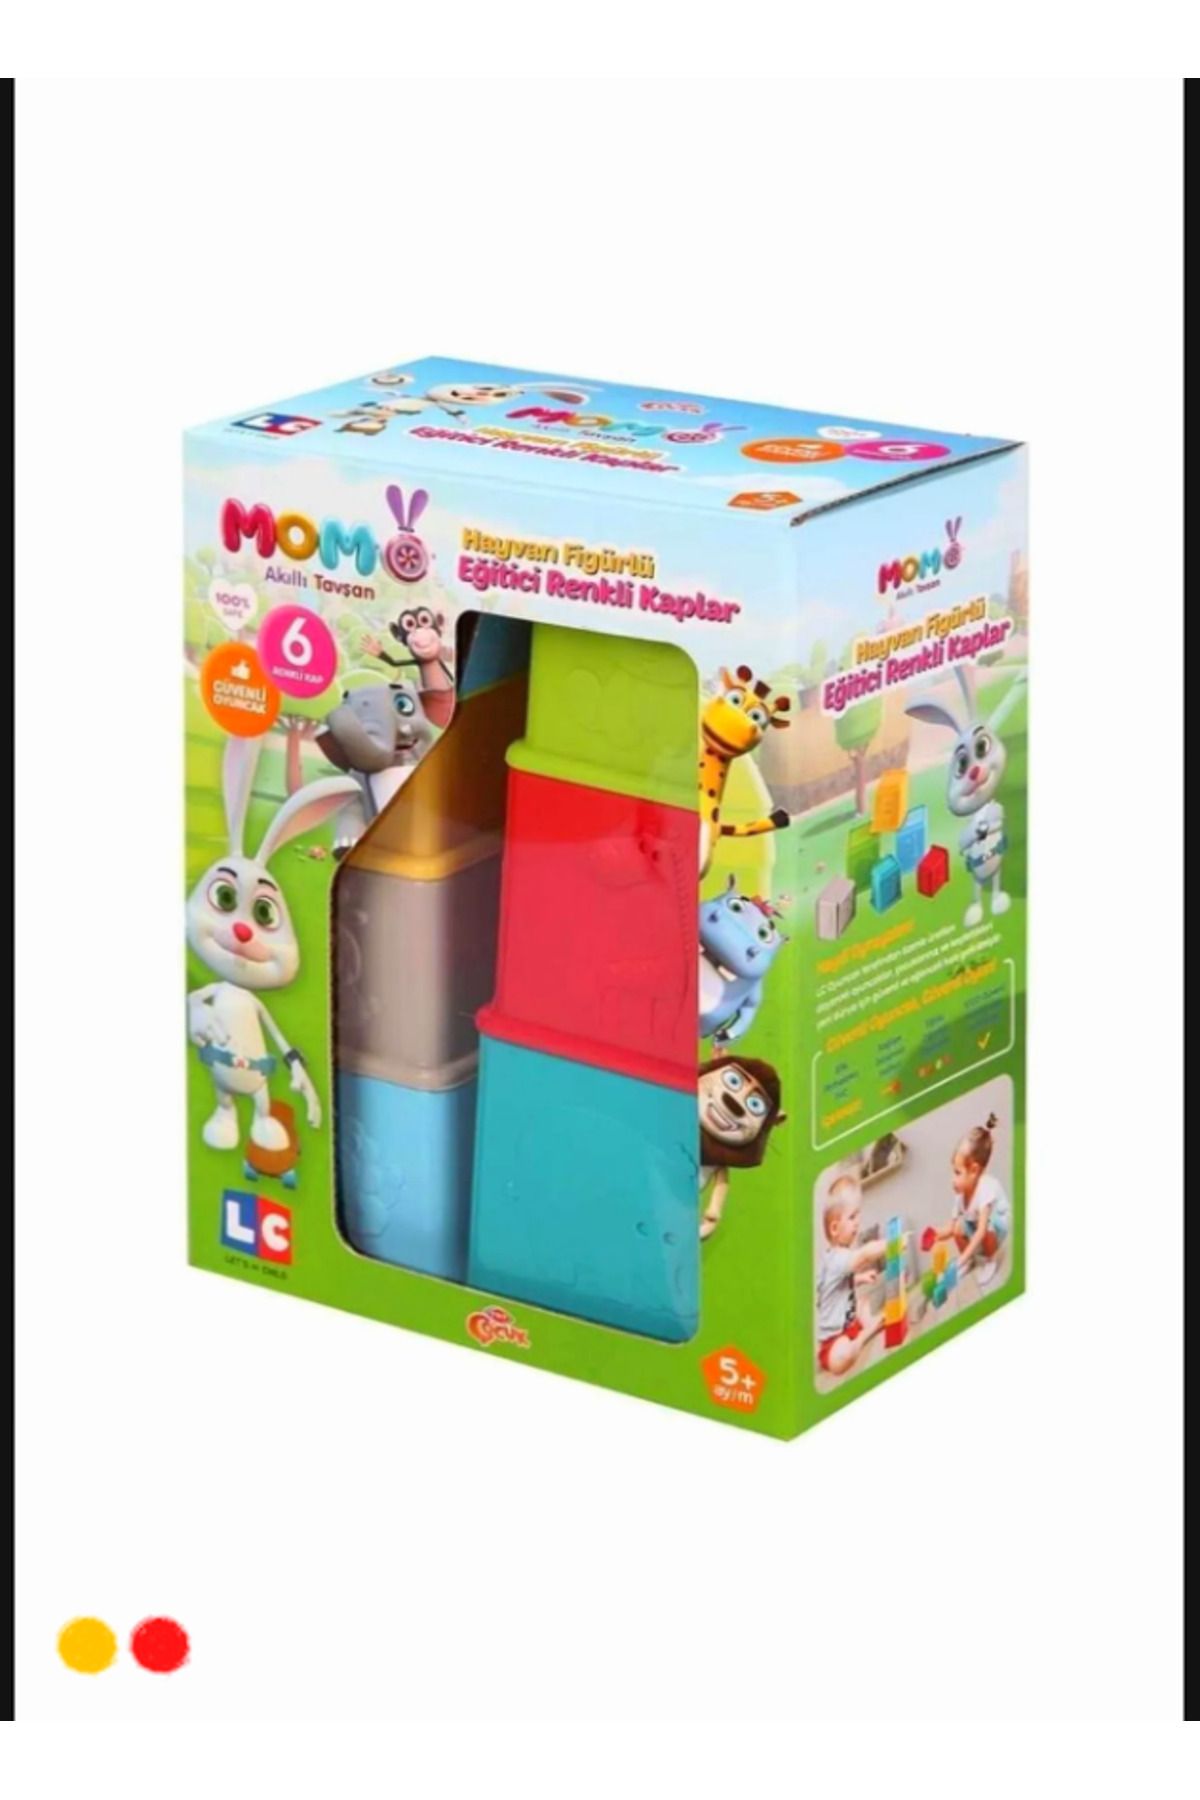 OMZ Akıllı Tavşan Momo Eğitici Renkli Kaplar Enf-t39002 Egitici Oyuncaklar